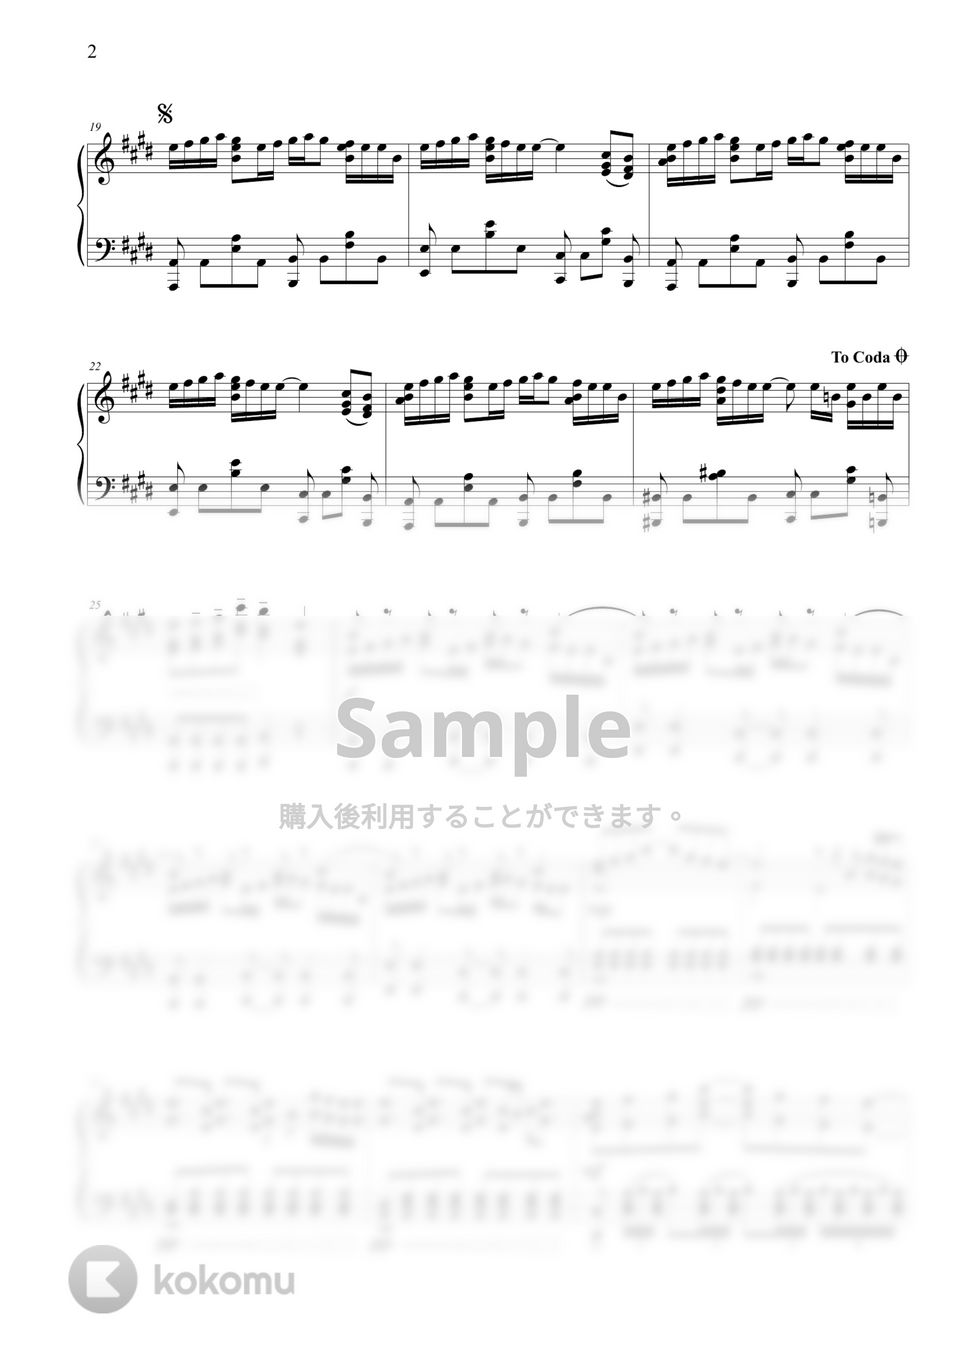 半妖の夜叉姫 - 穴空きの空 (2期 2クール ED) by THIS IS PIANO